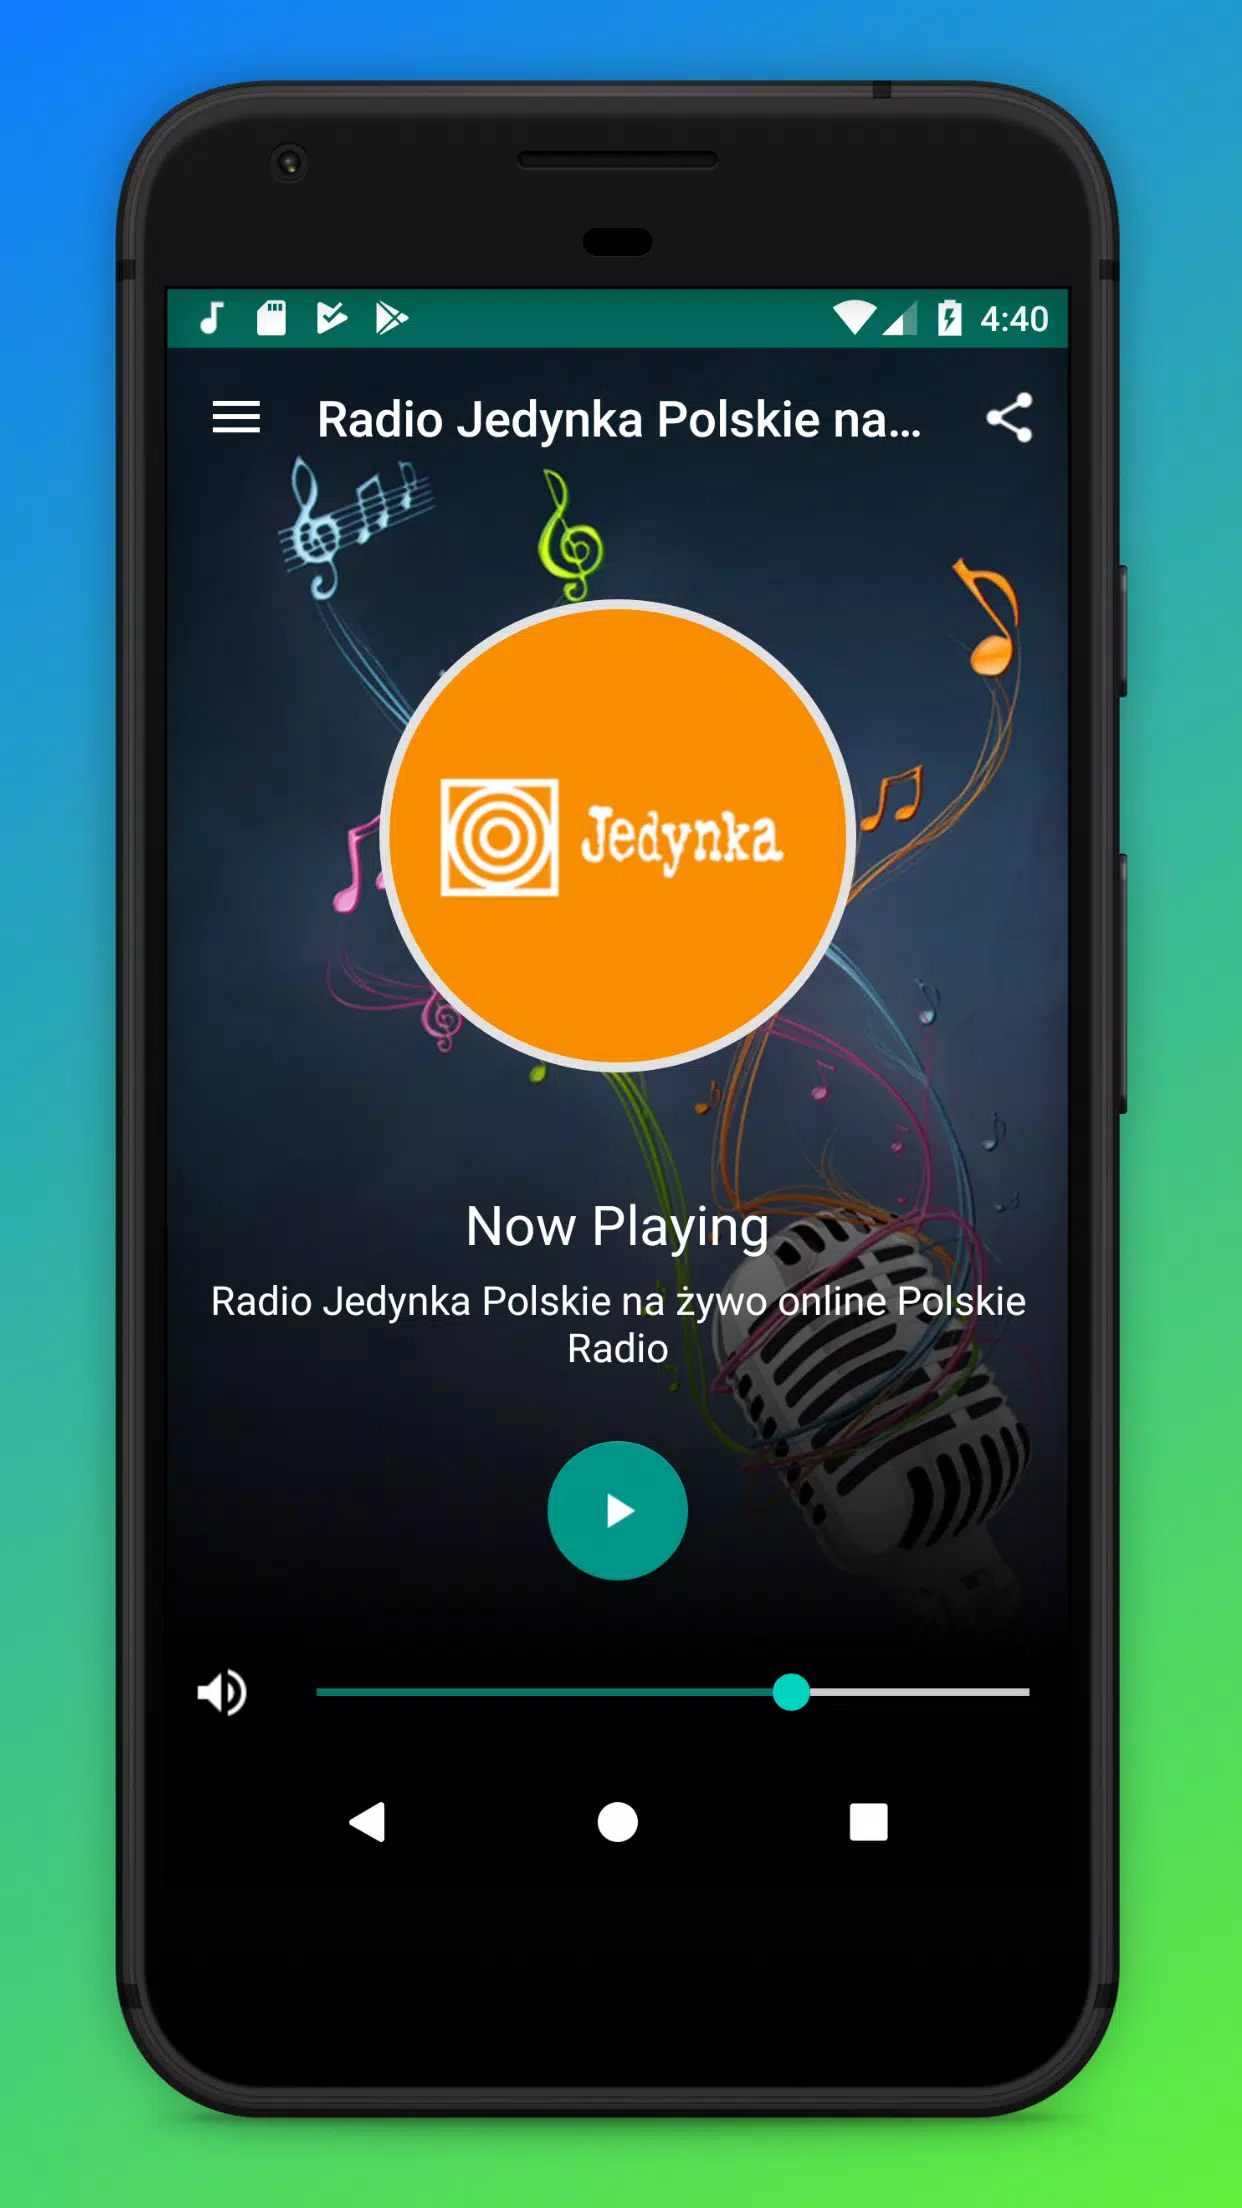 Radio Jedynka Polskie for Android - APK Download